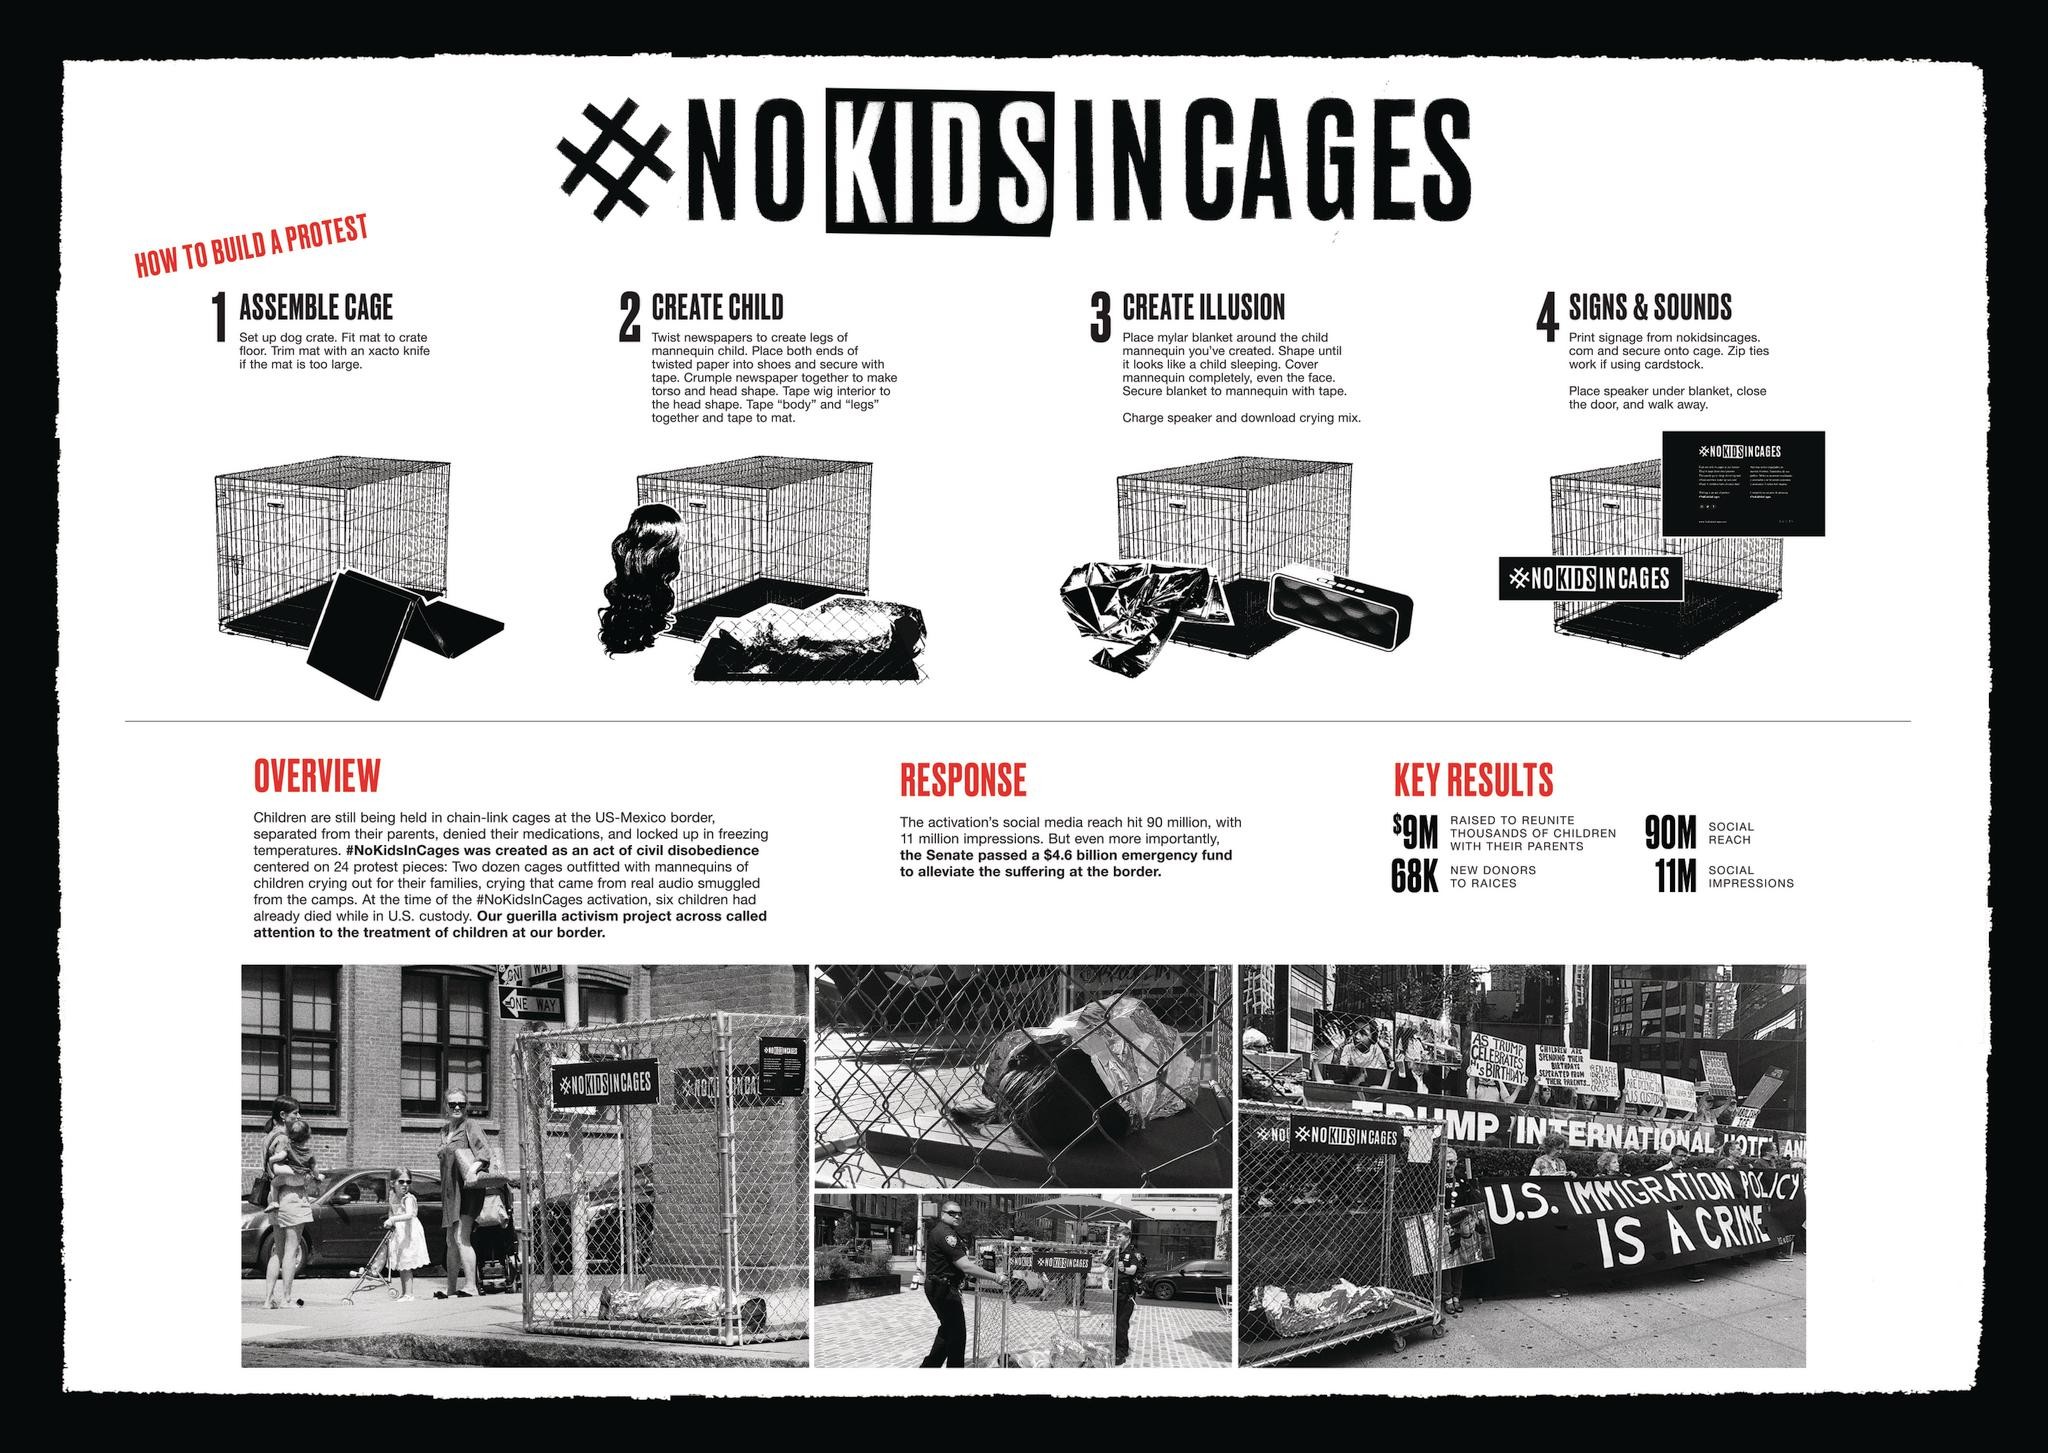 #NOKIDSINCAGES